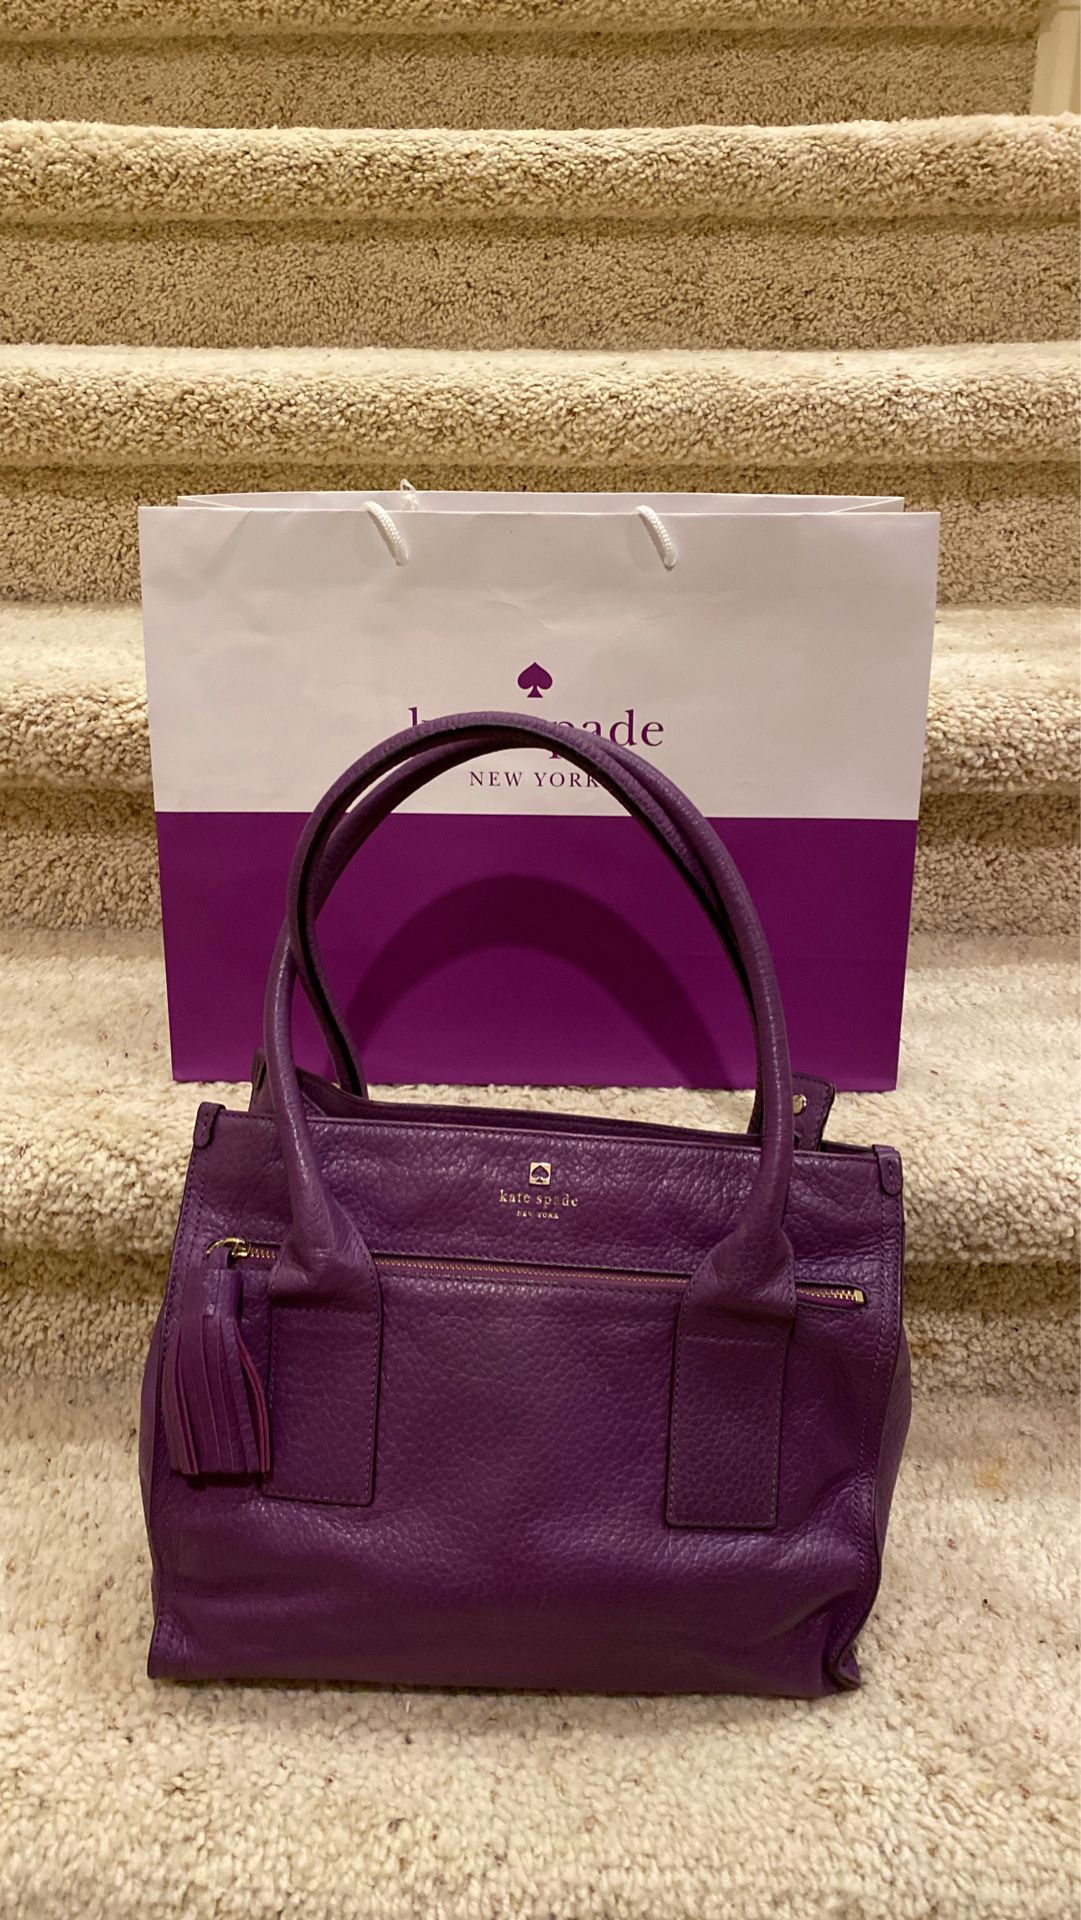 Kate Spade All Leather Purple Handbag. Original Price $425